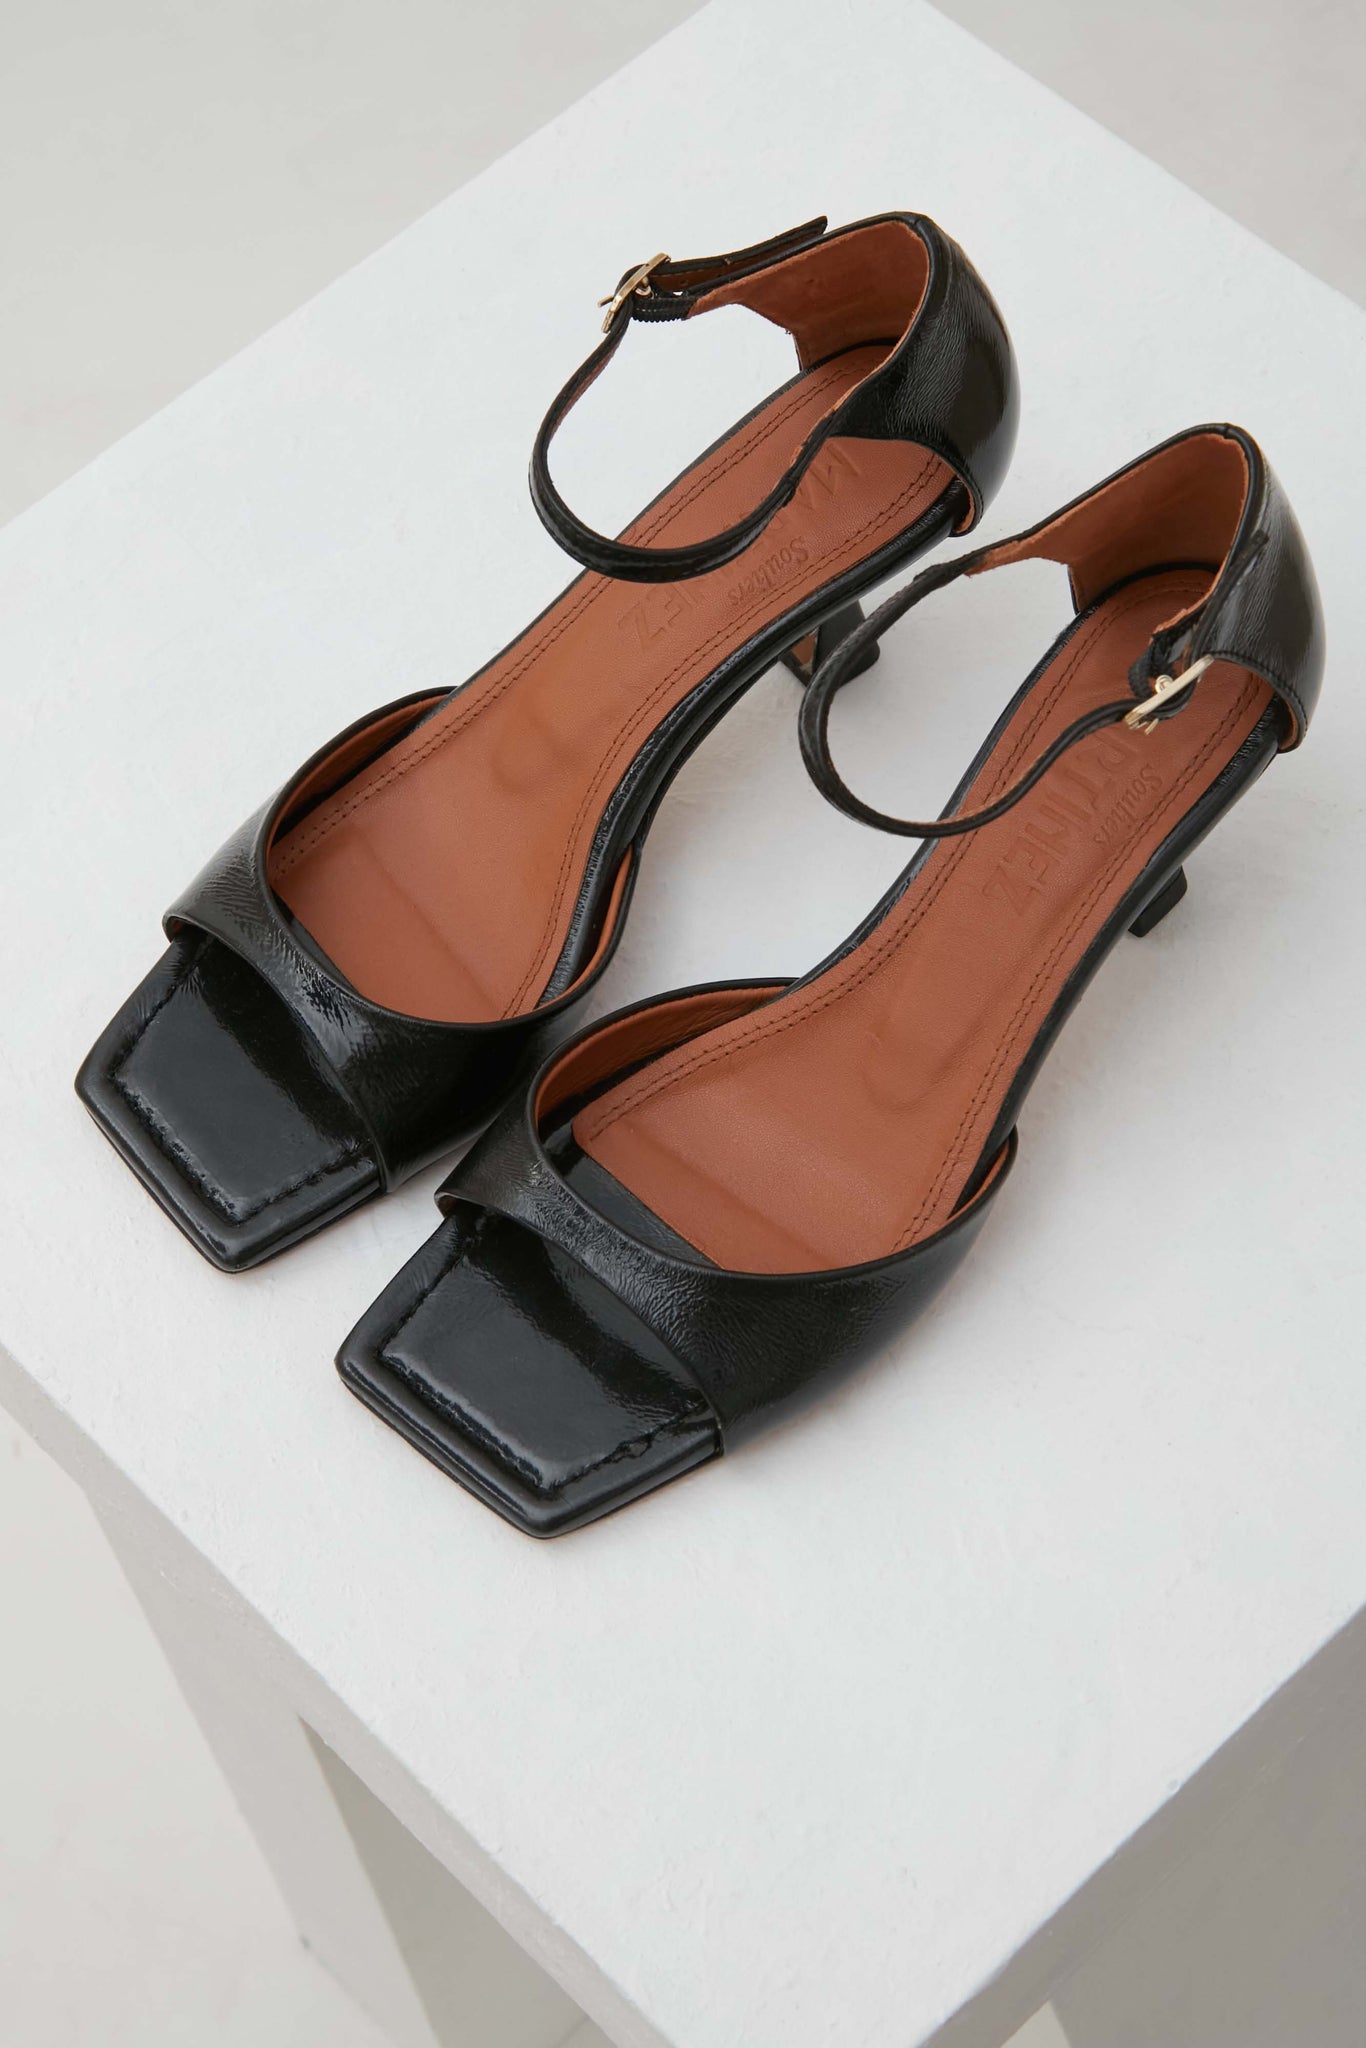 Souliers Martinez Shoes KIKA - Black Patent Leather Sandals 